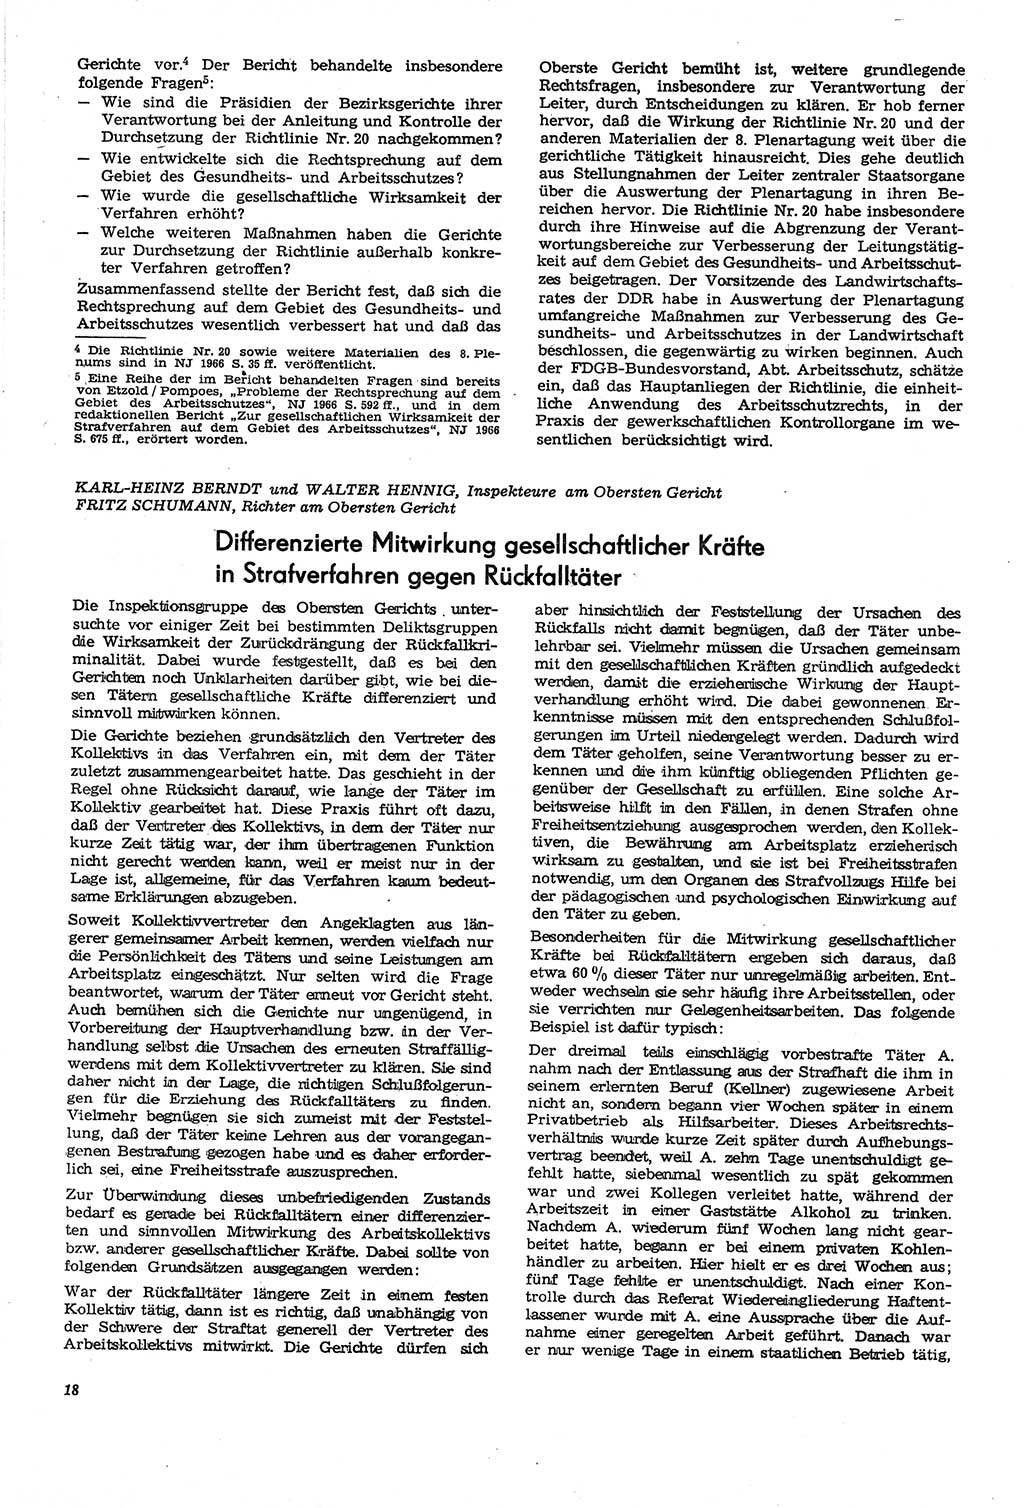 Neue Justiz (NJ), Zeitschrift für Recht und Rechtswissenschaft [Deutsche Demokratische Republik (DDR)], 21. Jahrgang 1967, Seite 18 (NJ DDR 1967, S. 18)